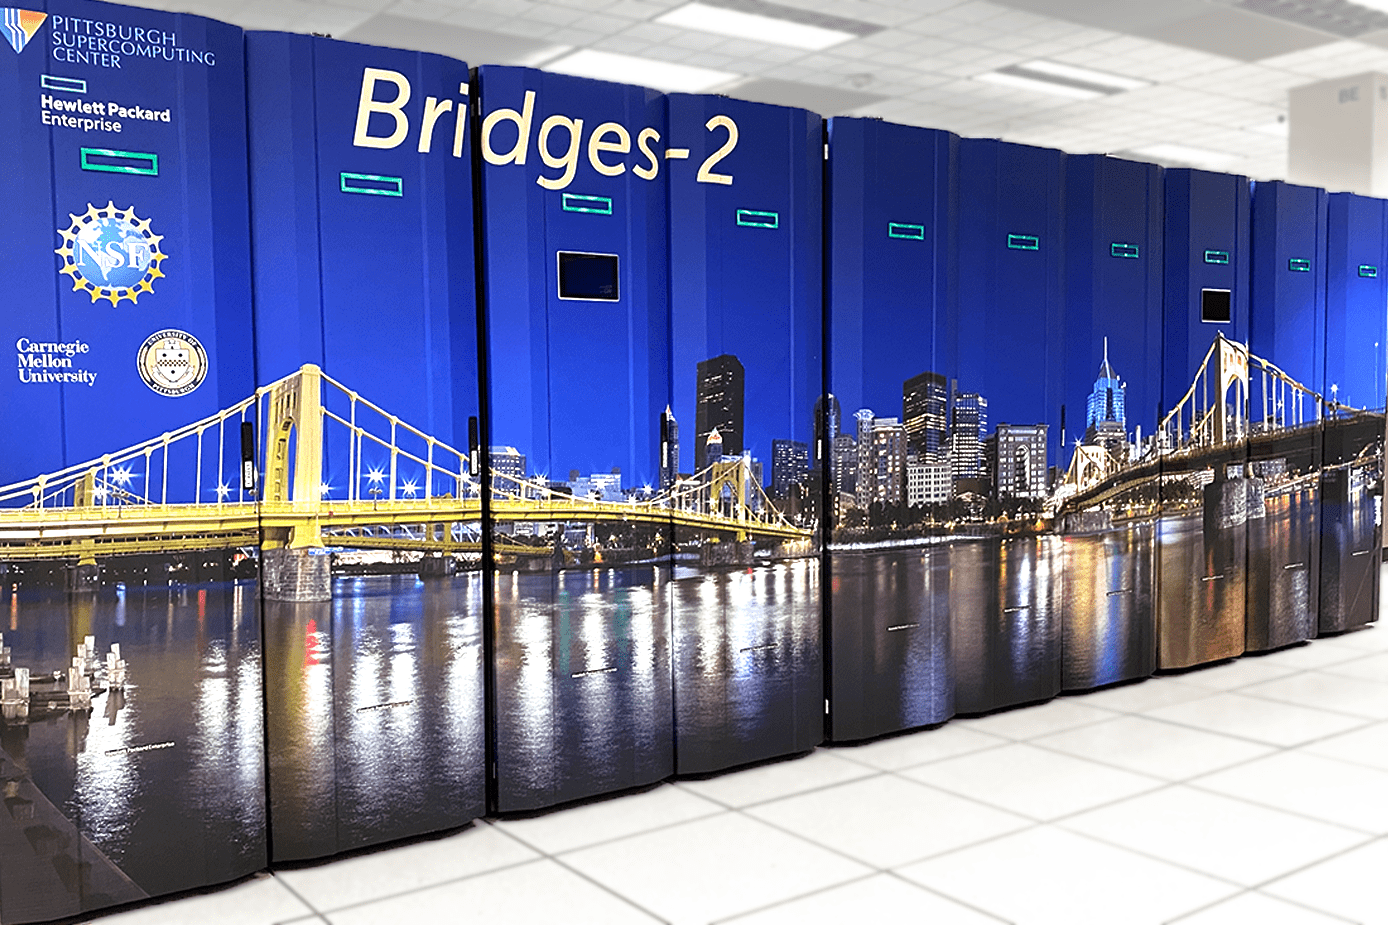 _images/bridges-2.png